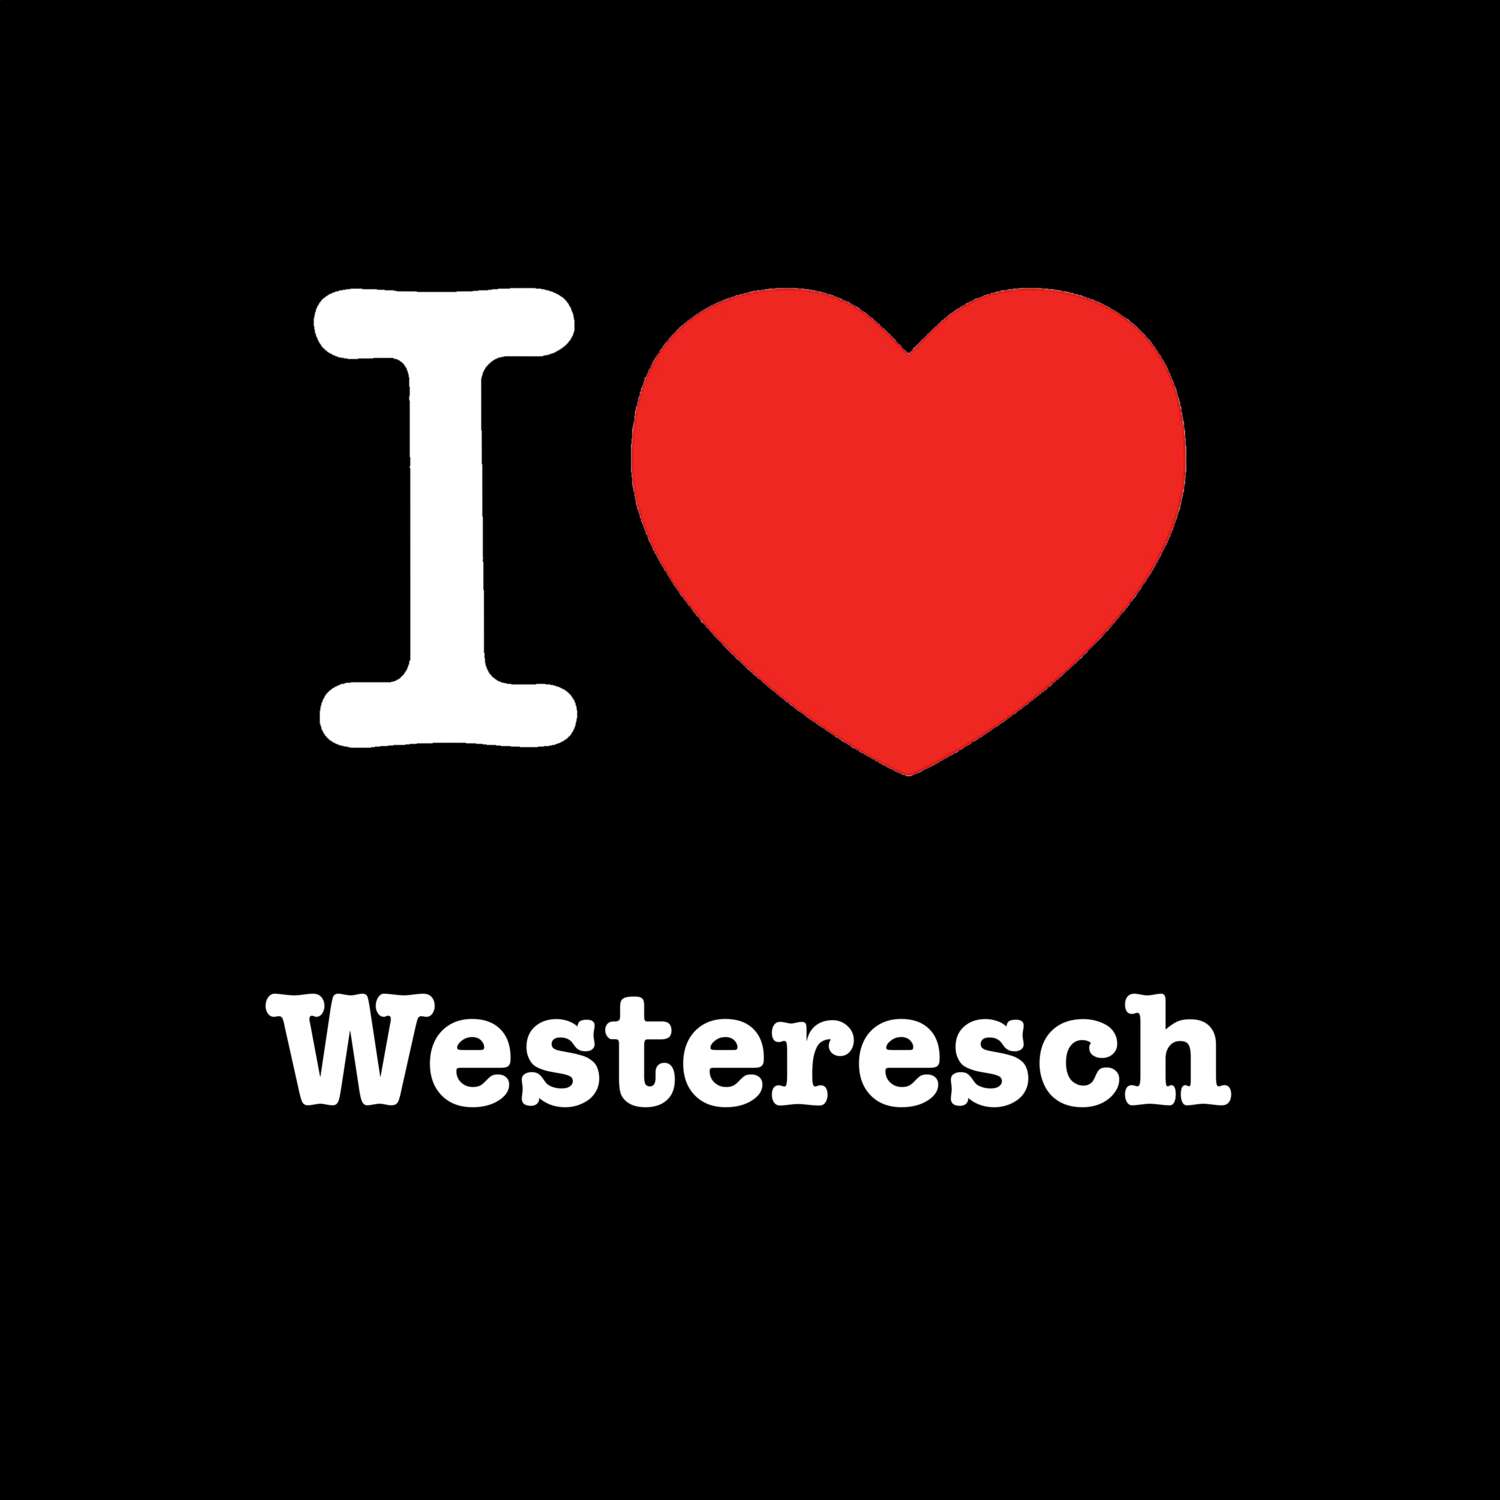 Westeresch T-Shirt »I love«